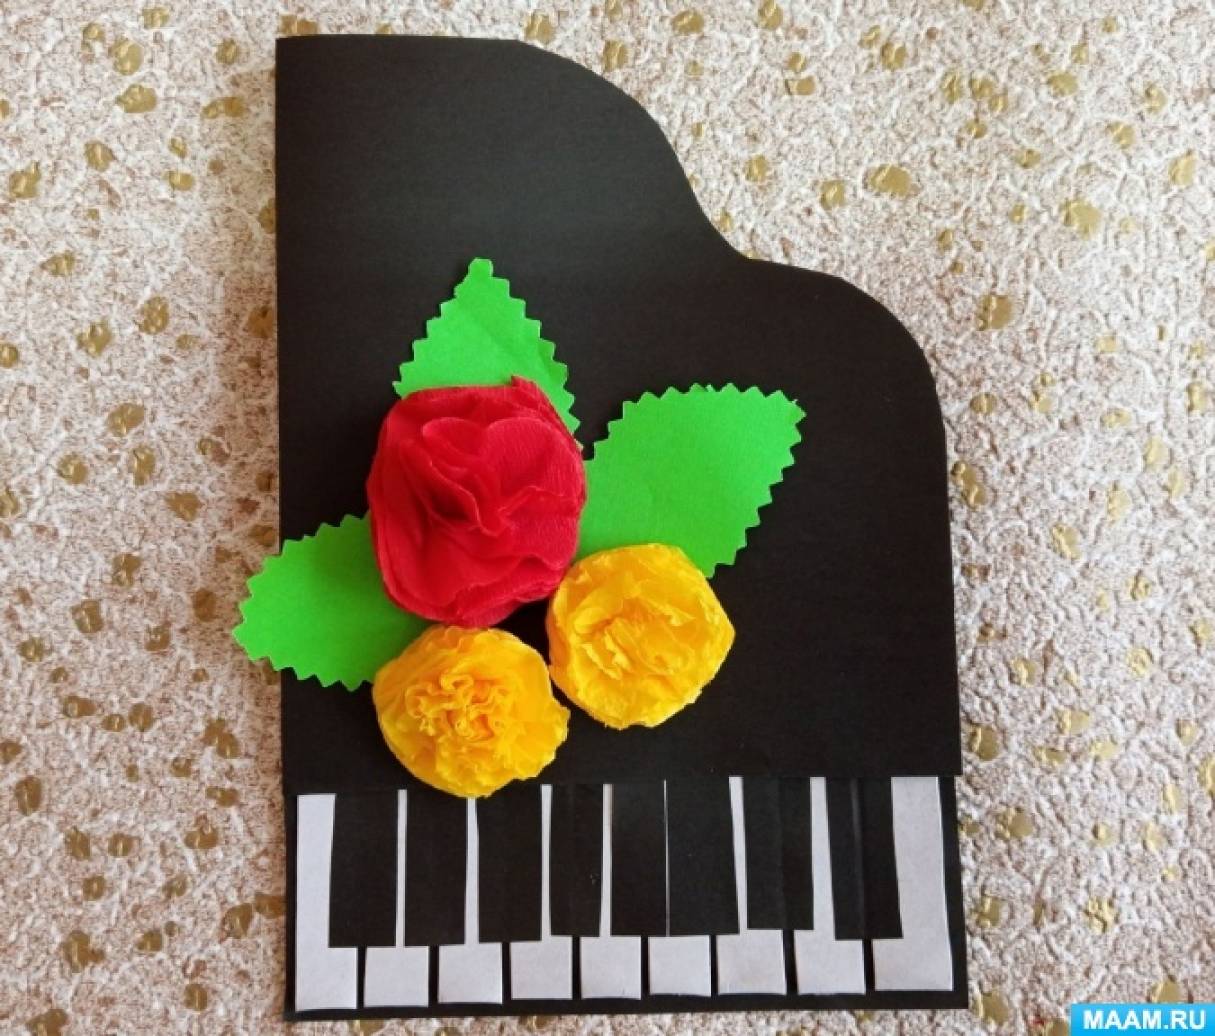 Мастер-класс по изготовлению открытки из бумаги «Фортепиано» ко Дню Пианиста на МAAM